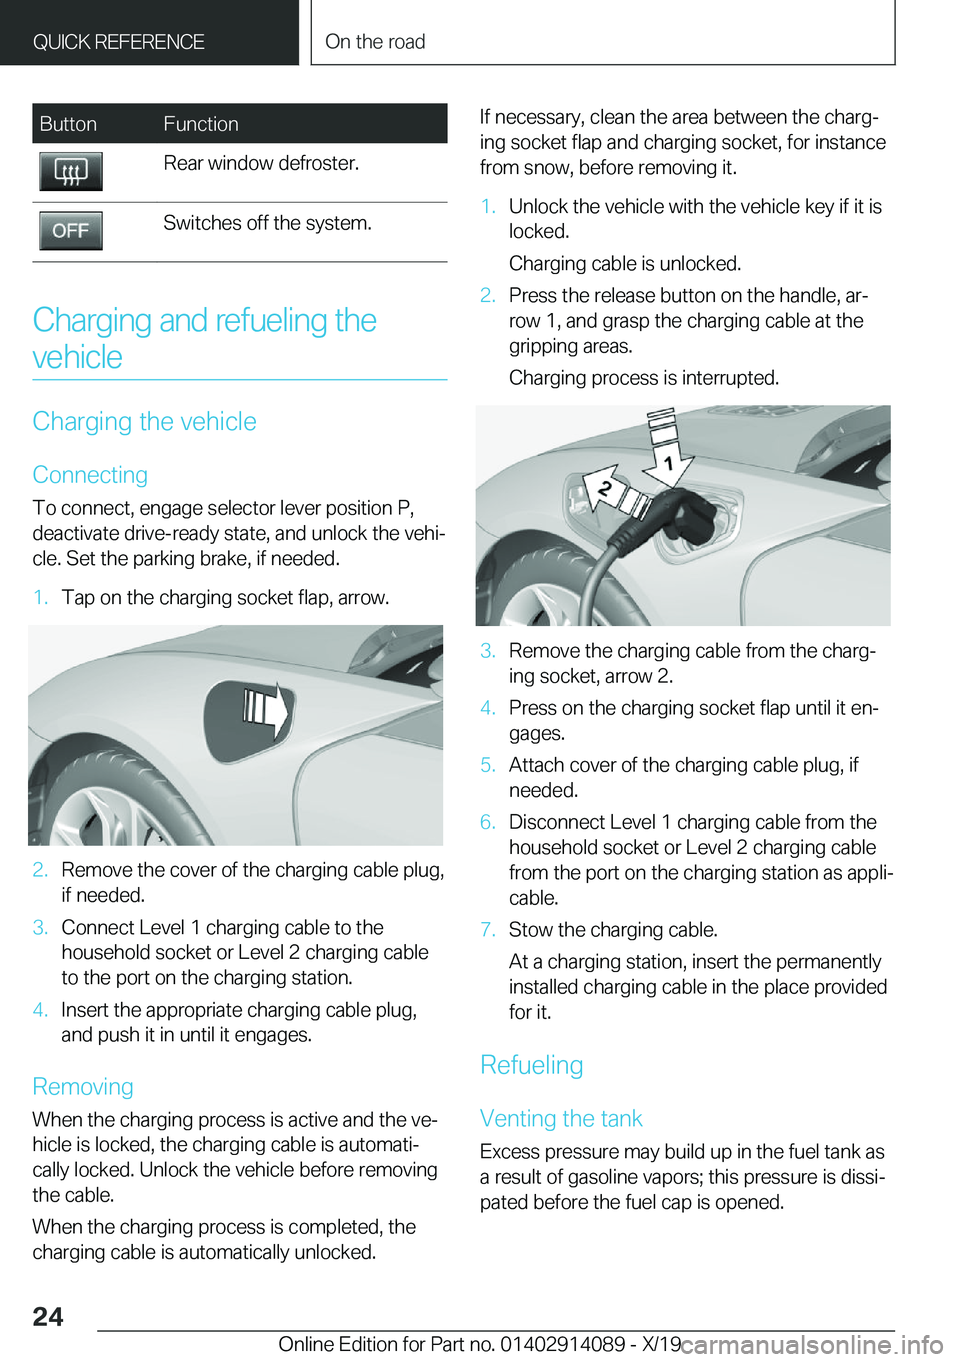 BMW I8 2020 Owners Manual �B�u�t�t�o�n�F�u�n�c�t�i�o�n�R�e�a�r��w�i�n�d�o�w��d�e�f�r�o�s�t�e�r�.�S�w�i�t�c�h�e�s��o�f�f��t�h�e��s�y�s�t�e�m�.
�C�h�a�r�g�i�n�g��a�n�d��r�e�f�u�e�l�i�n�g��t�h�e�v�e�h�i�c�l�e
�C�h�a�r�g�i